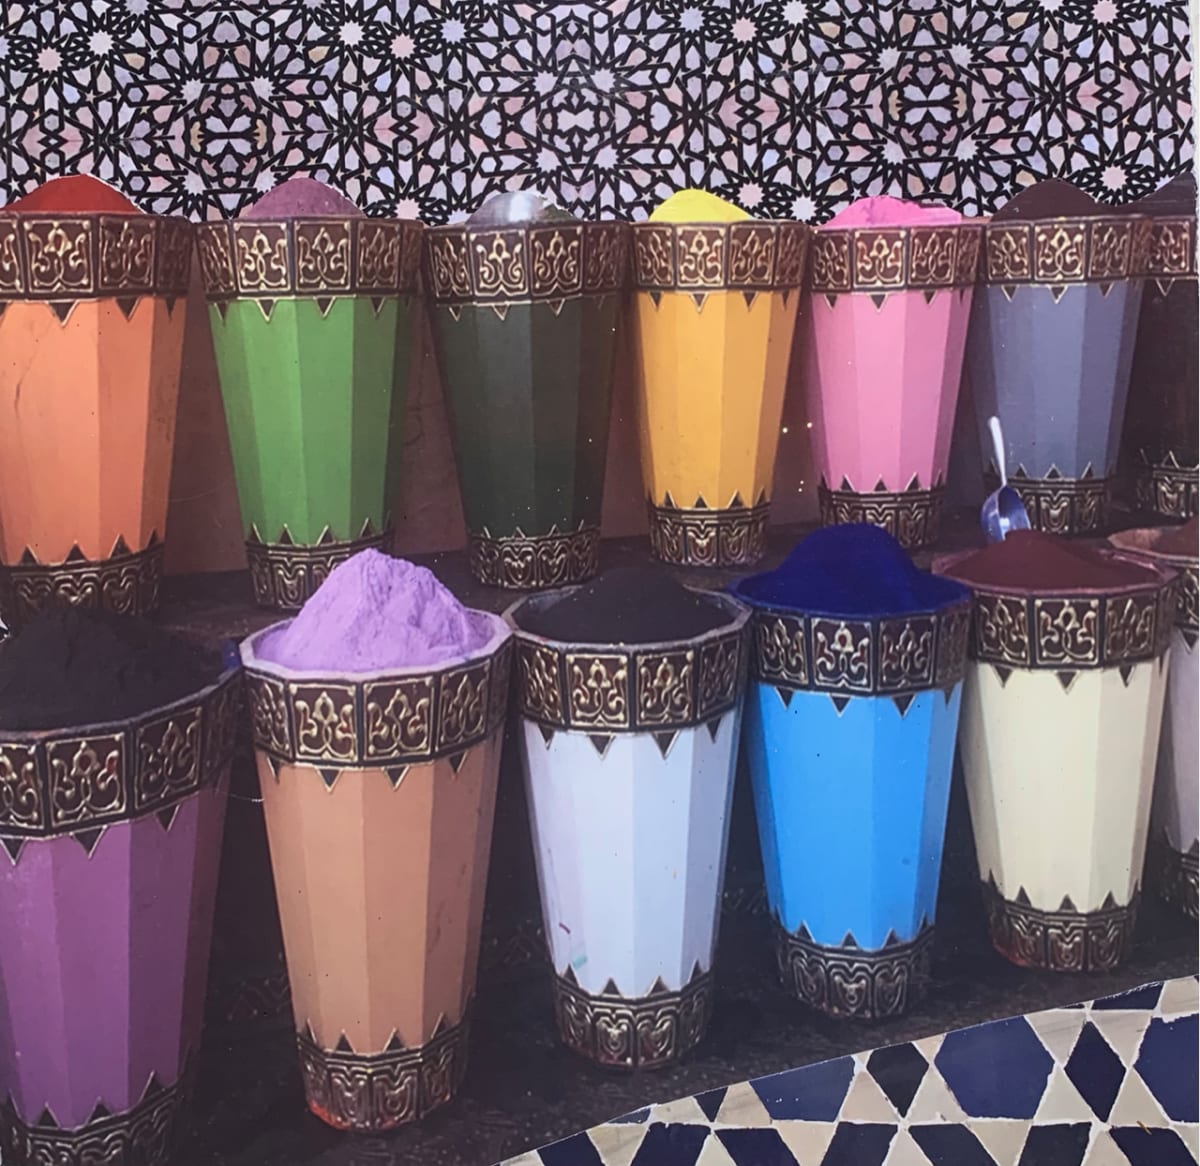 Marrakech Market 2 